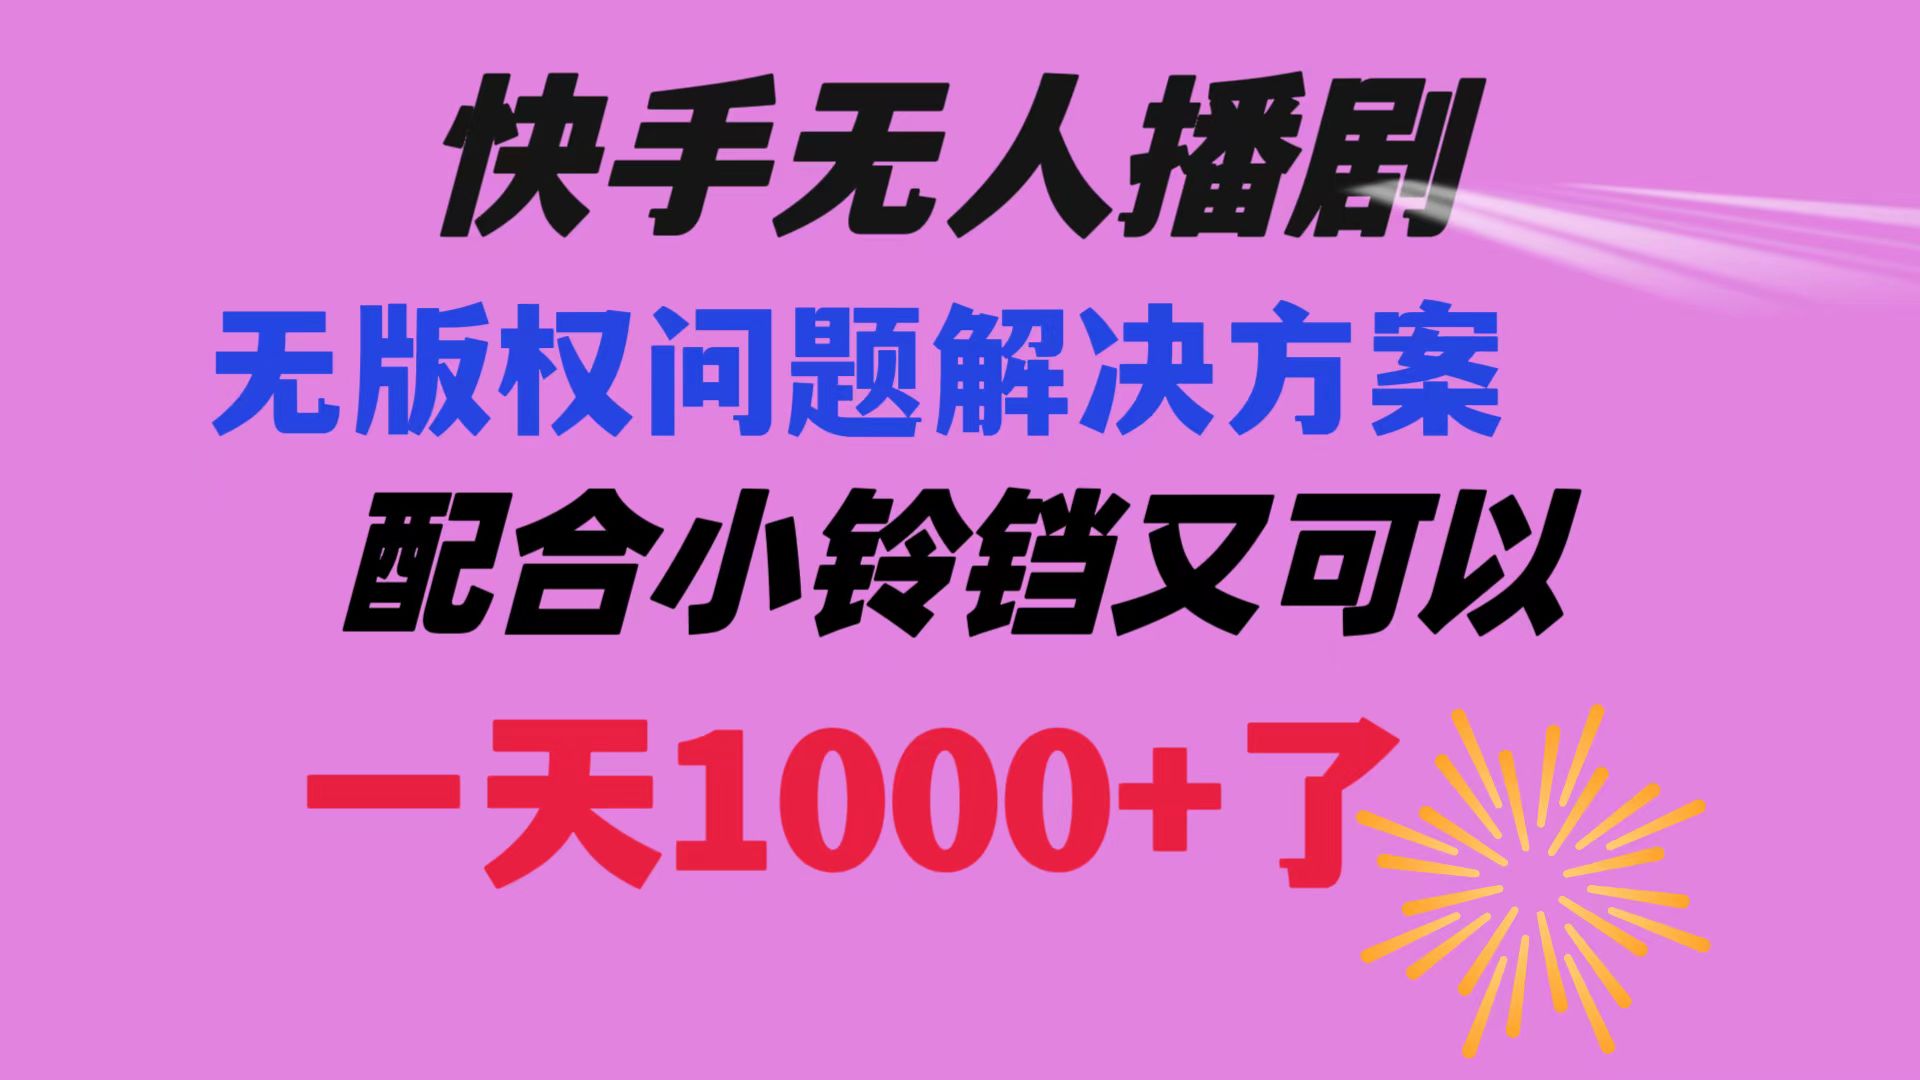 【网赚上新】012.快手无人播剧最新玩法解决无版权方案 日入1000+